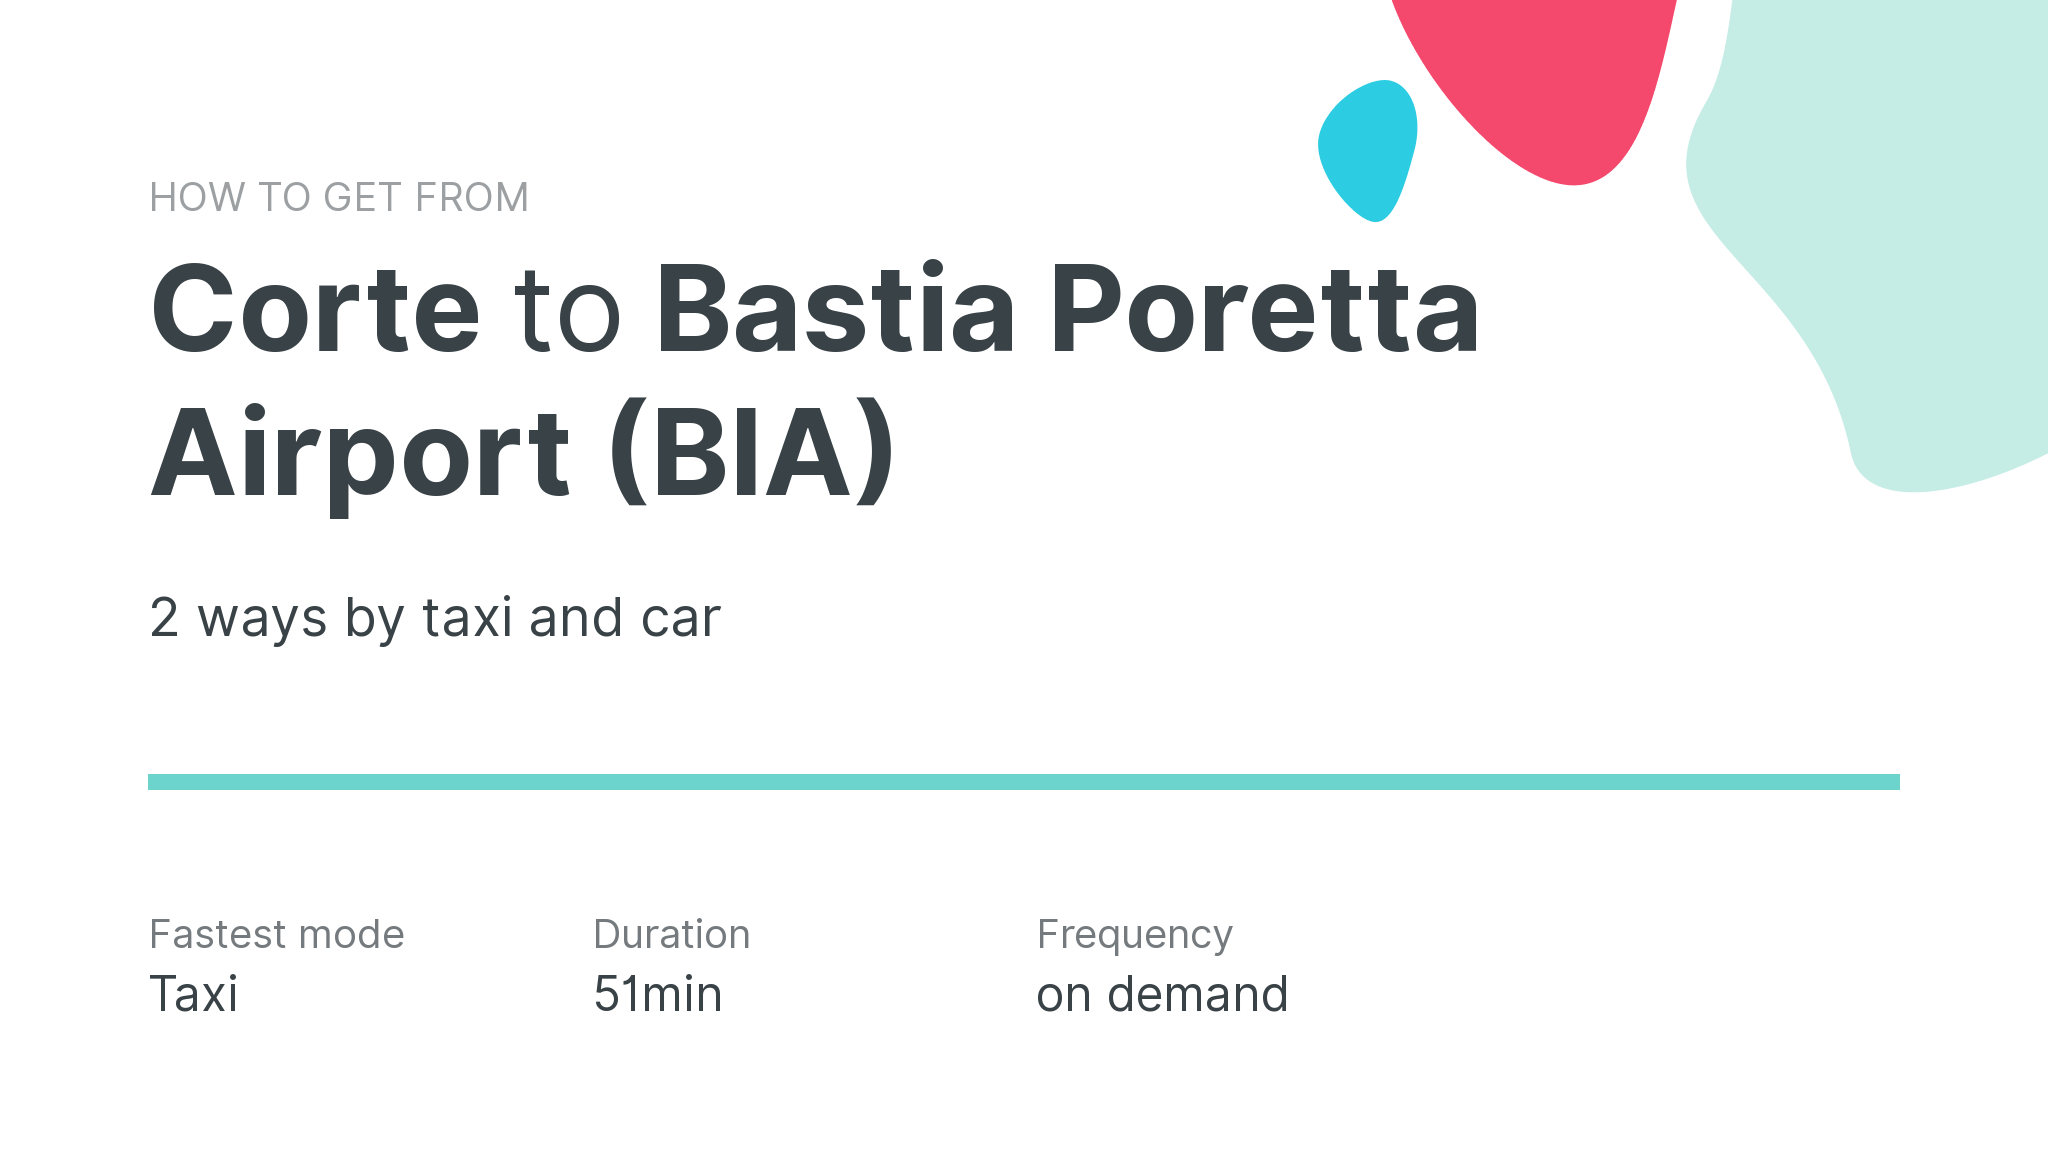 How do I get from Corte to Bastia Poretta Airport (BIA)